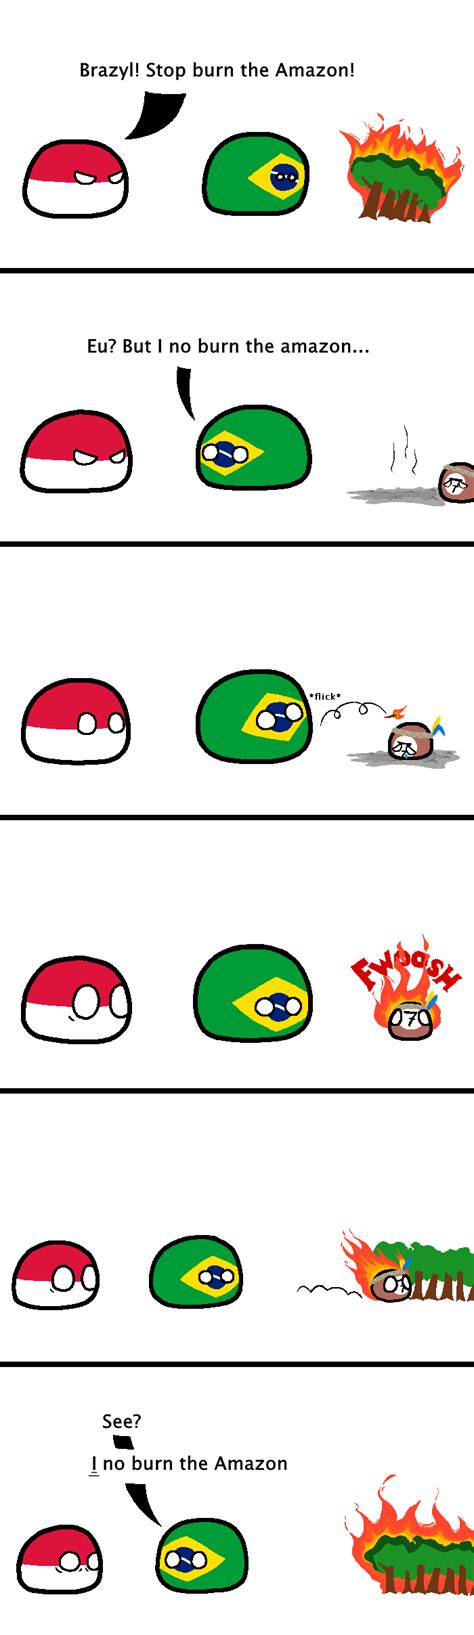 reddit polandball brazil